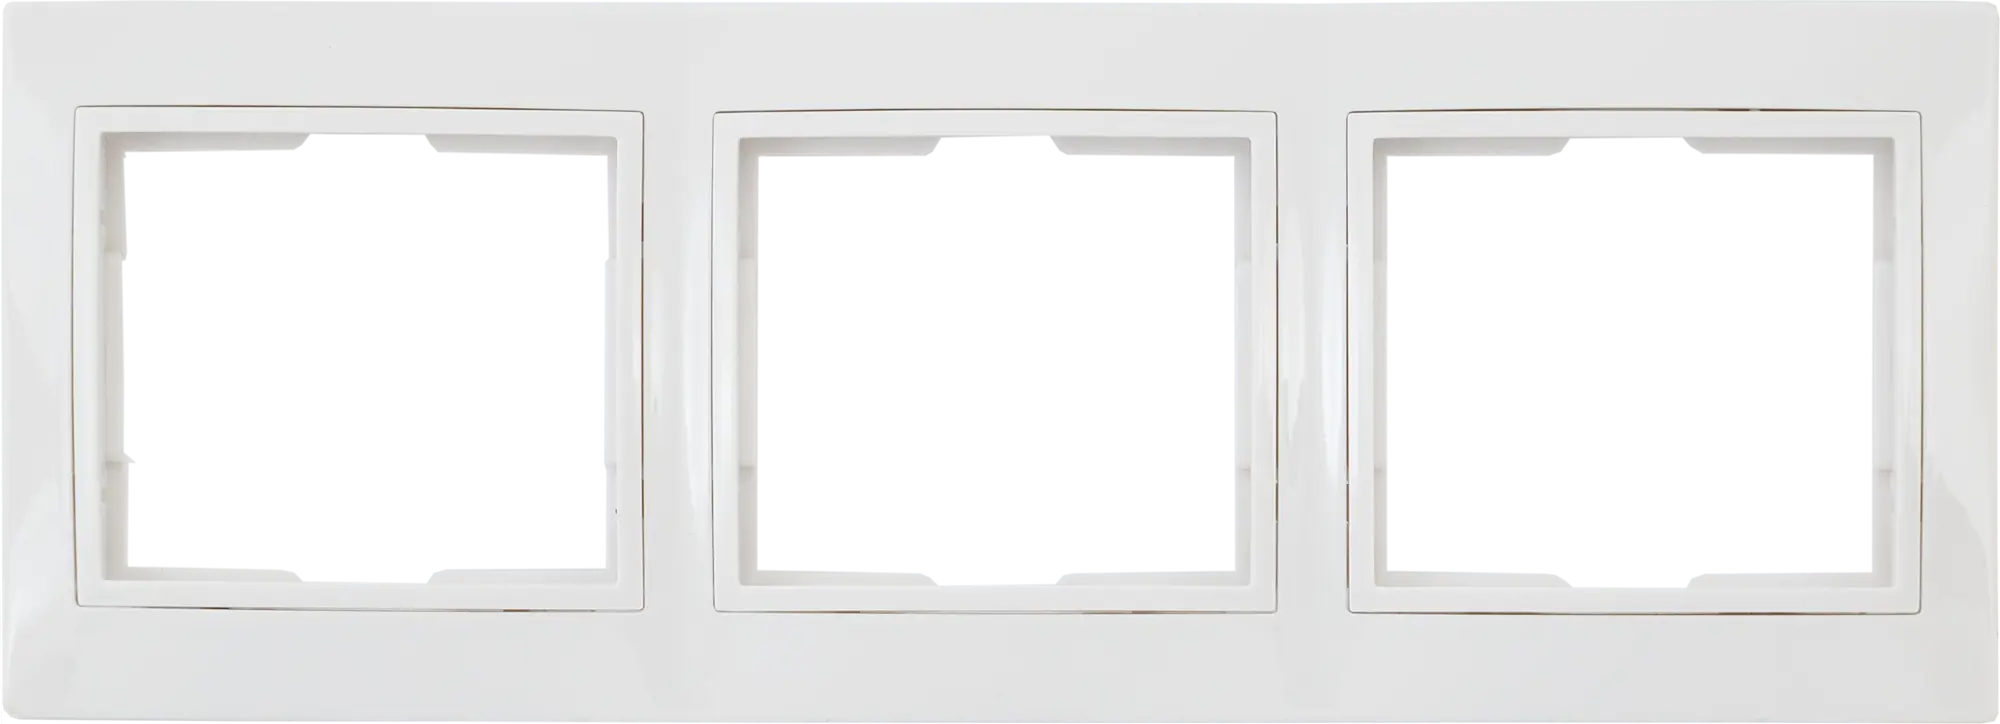 Рамка для розеток и выключателей горизонтальная Таймыр 3 поста, цвет белый настенное зеркало александрия сосна санторини светлая горизонтальная